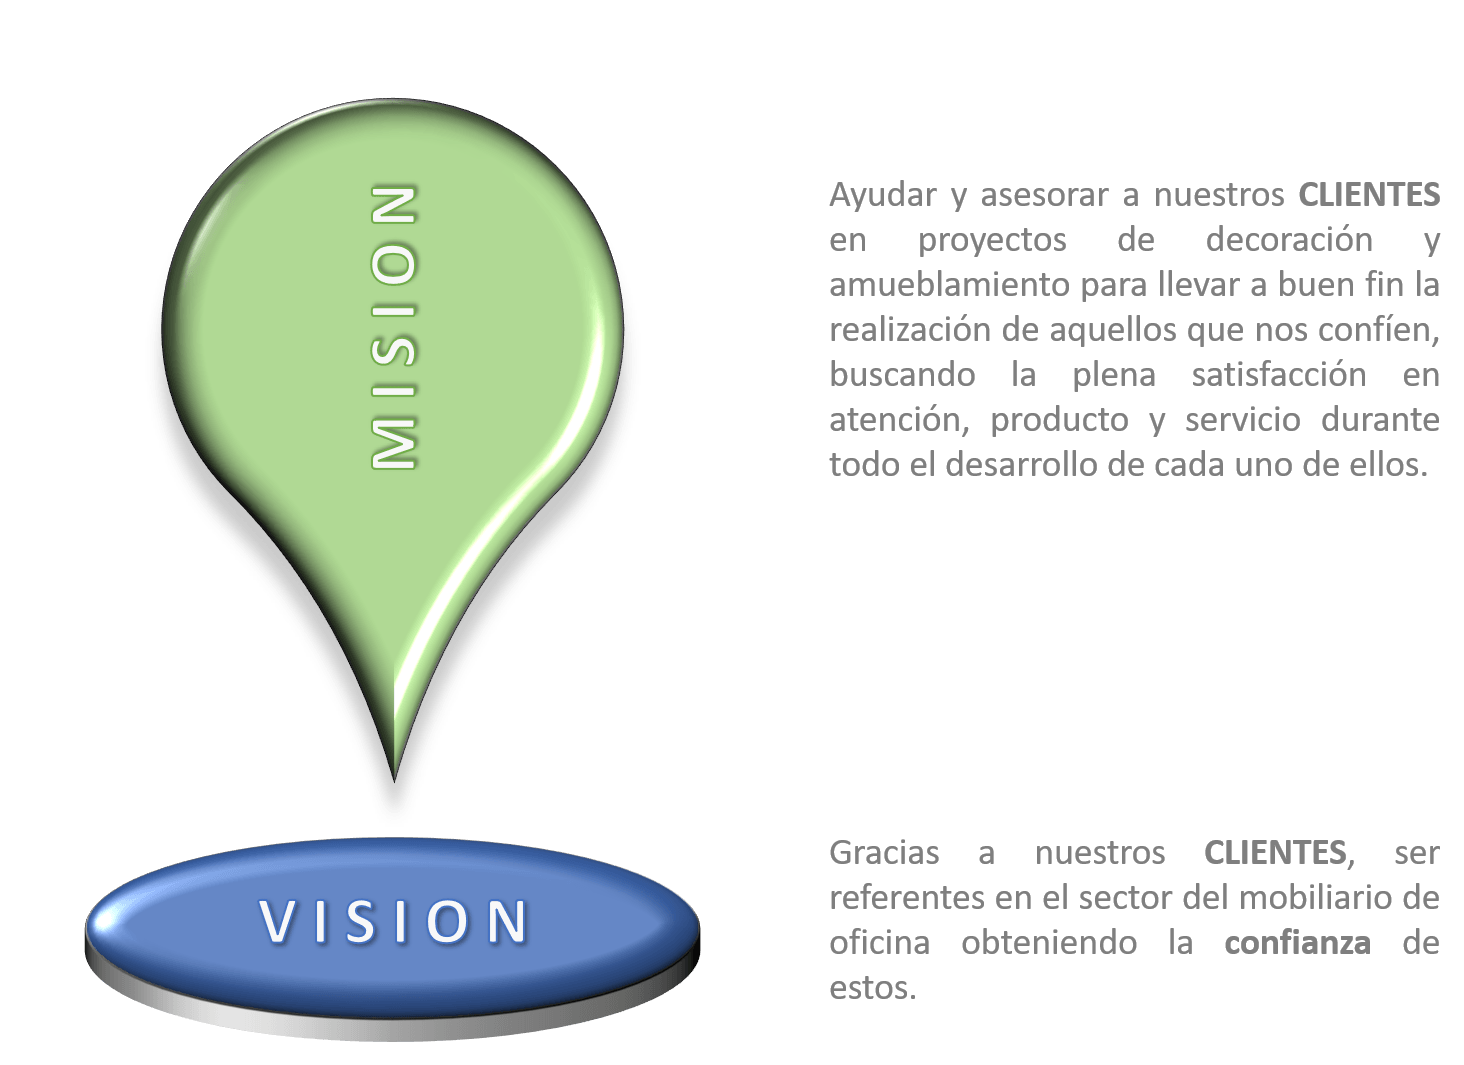 RJLmadrid - Visión y Misión